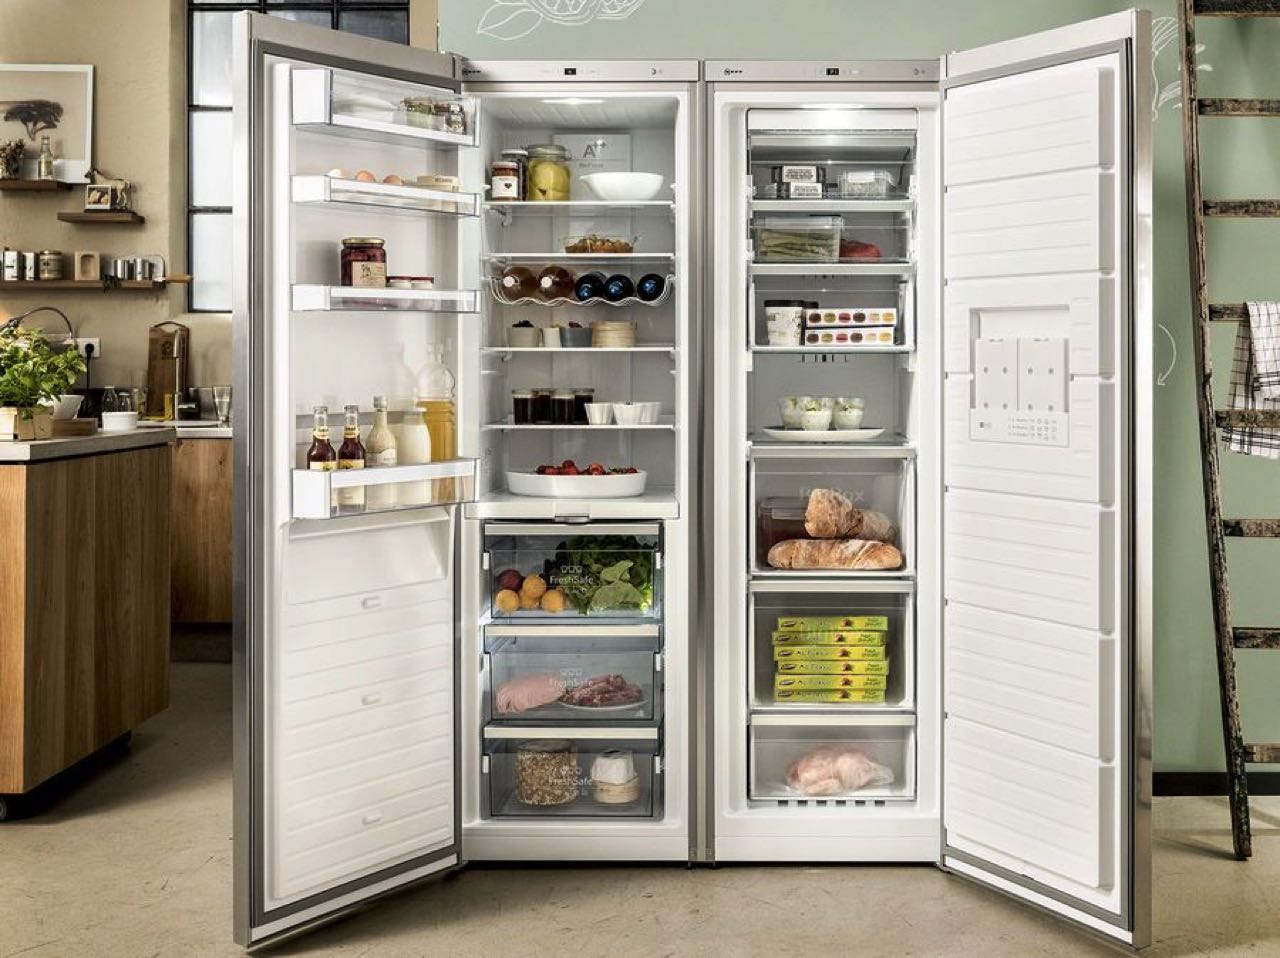 Großzügiger Luxus: Side-by-Side Kühlschrank | Küchen Journal